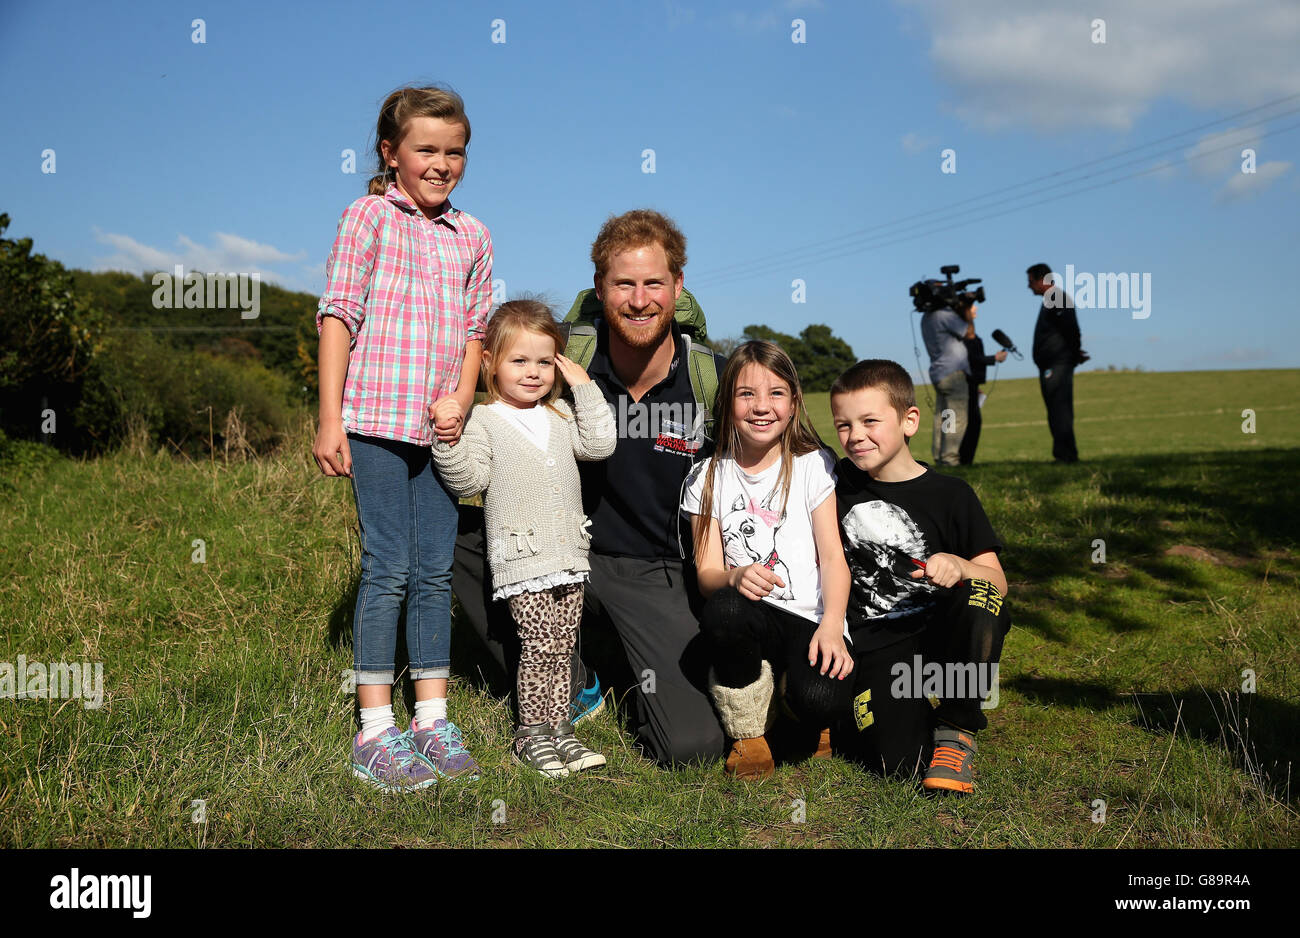 Le prince Harry rencontre quelques enfants lorsqu'il a rejoint l'équipe de marche de Grande-Bretagne des blessés lors de leur promenade jusqu'à Ludlow, à Shrophire, tandis qu'ils parcourent la longueur du pays sur leurs propres routes personnelles pour se rétablir. Banque D'Images